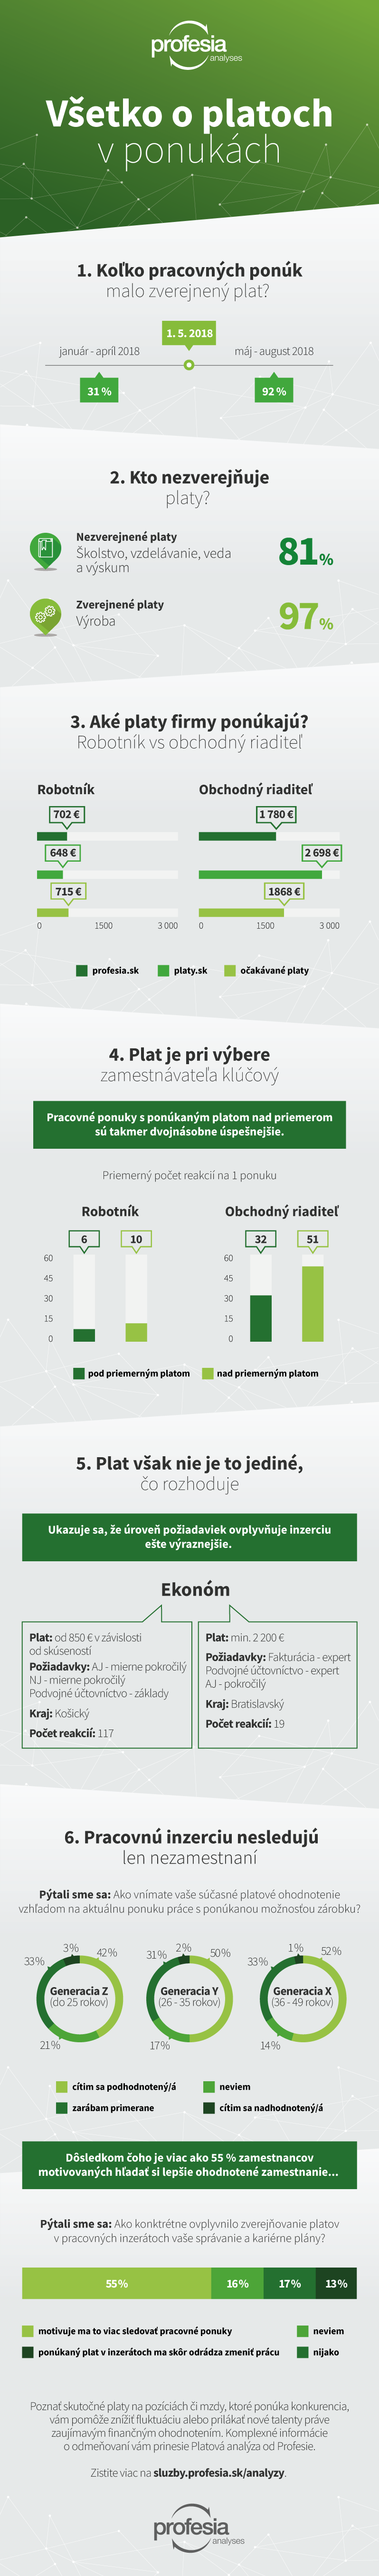 Profesia.sk - Všetko o platoch v ponukách - infografika